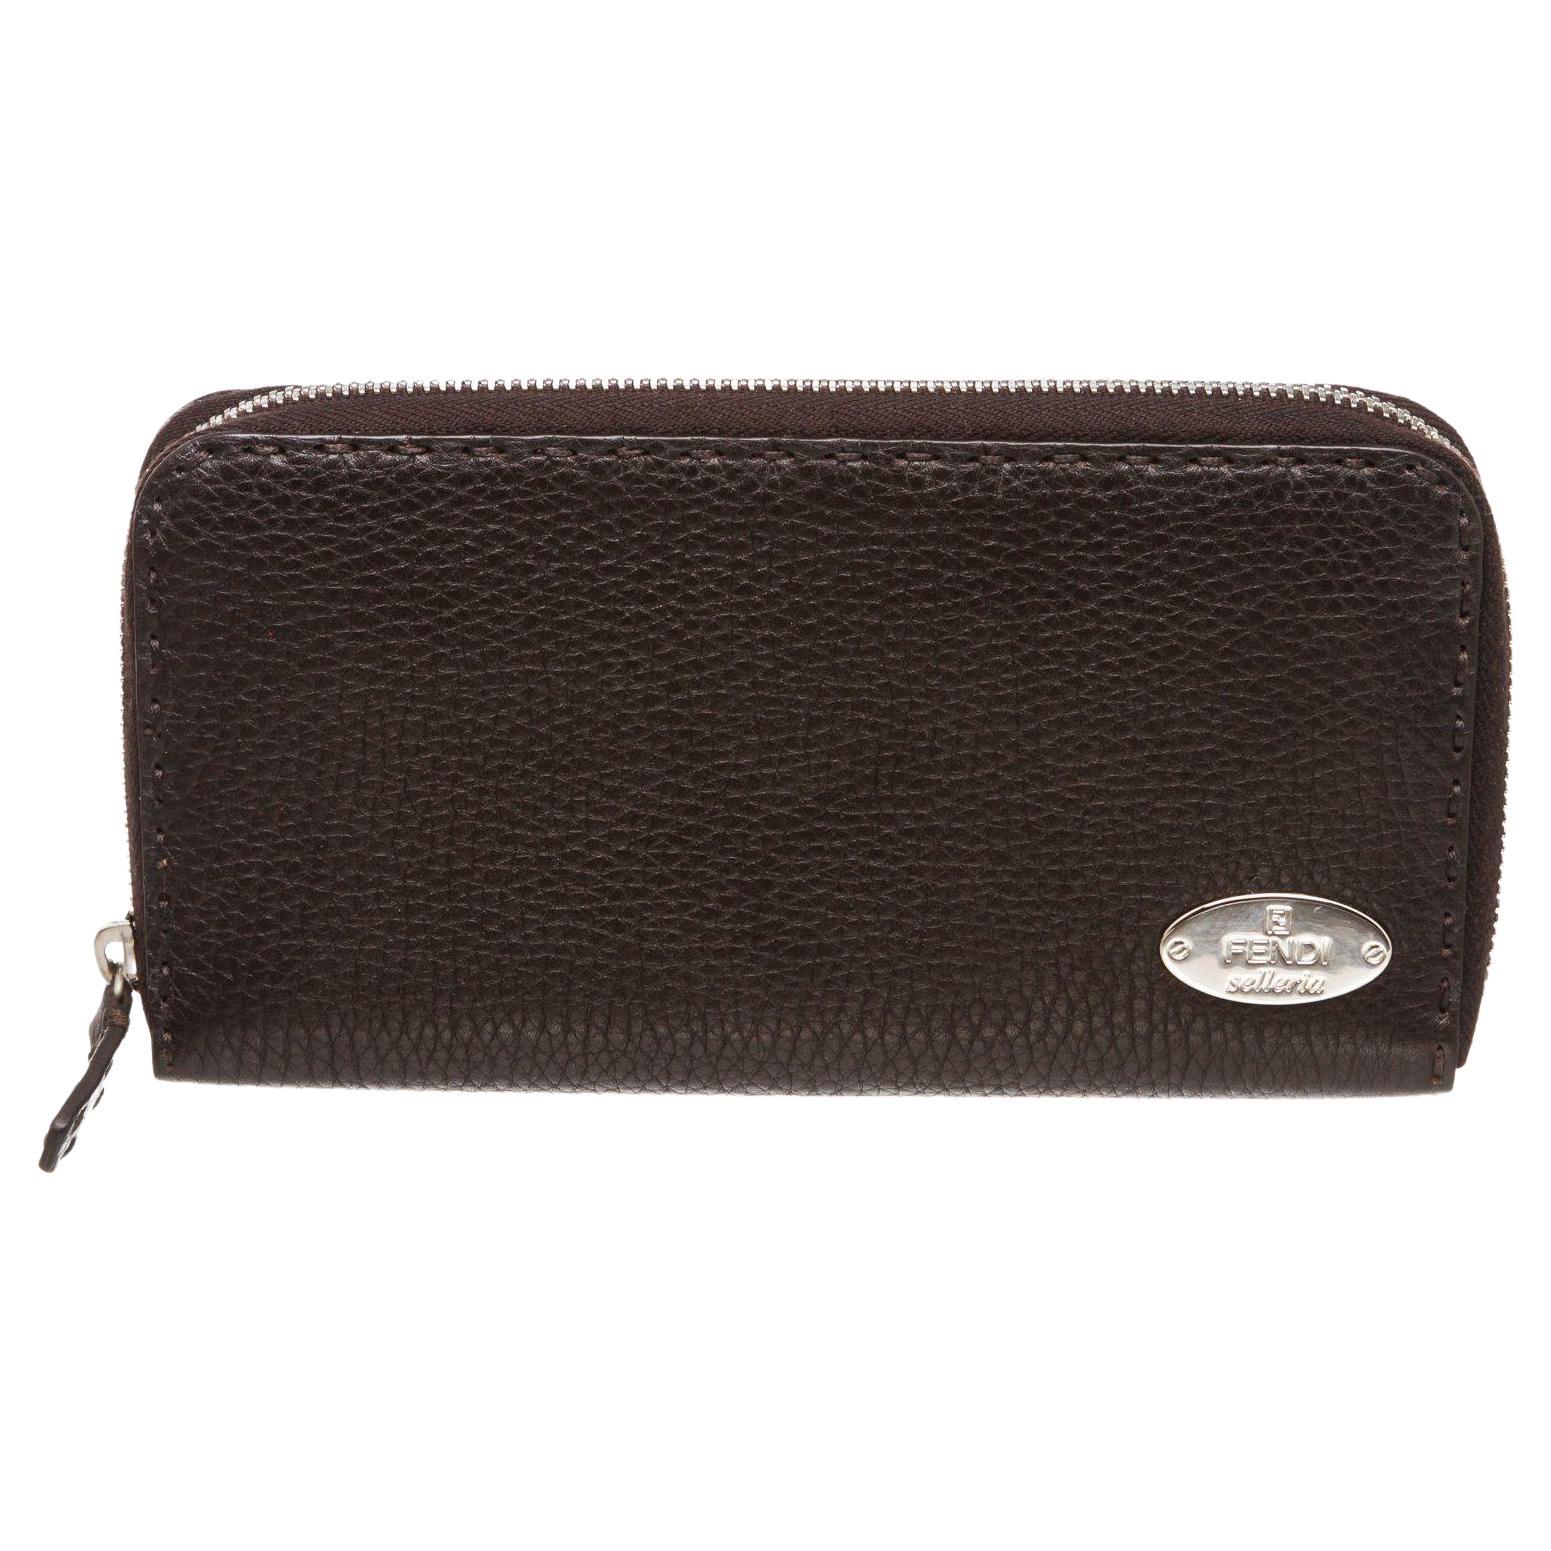 Fendi Salleria dark brown leather zip around wallet with silver-tone hardware For Sale